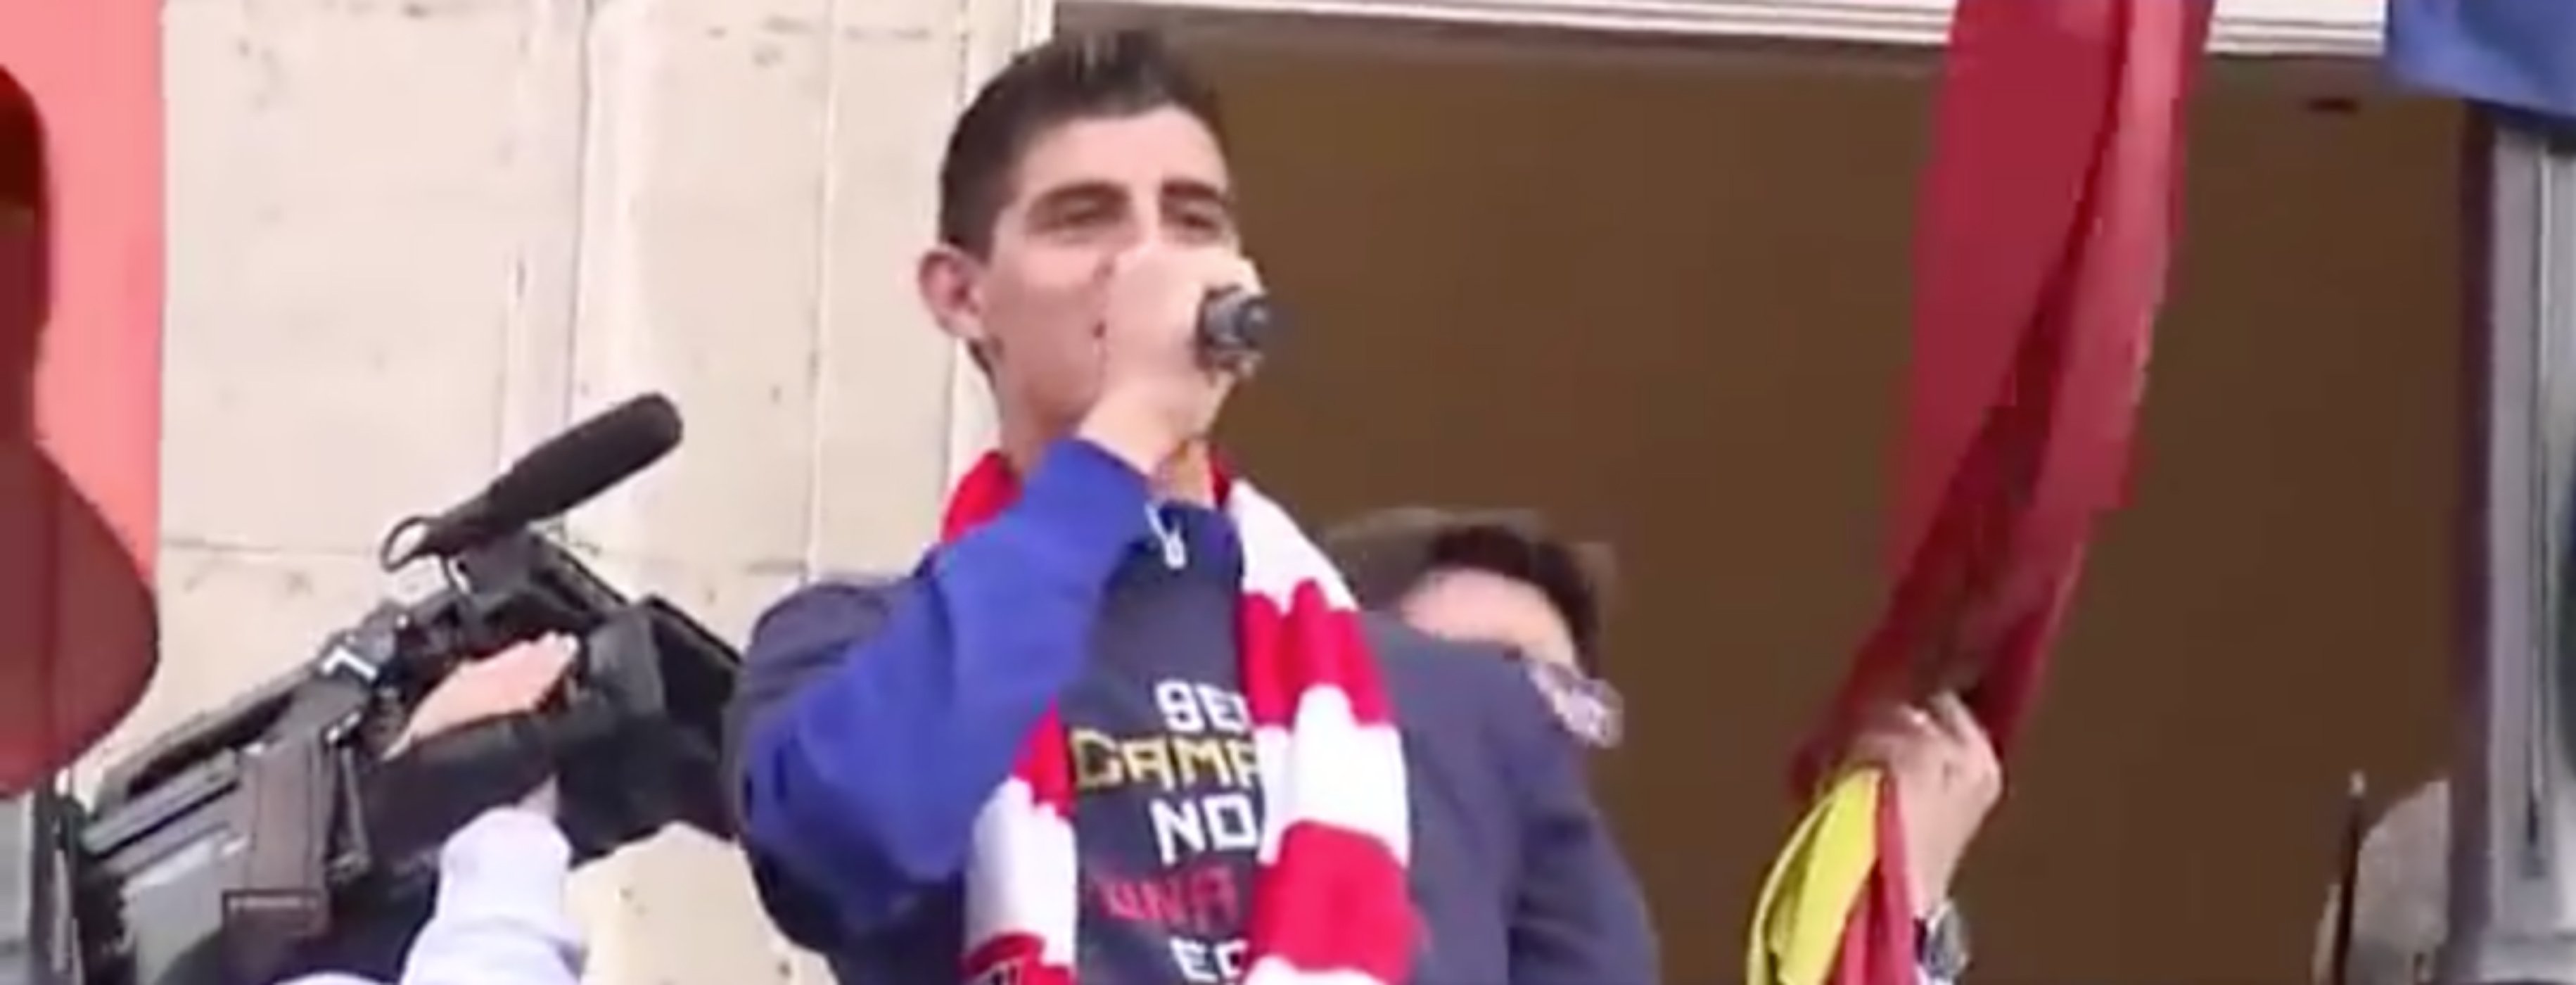 El vídeo del nuevo portero del Madrid que no gustará nada en el Santiago Bernabéu